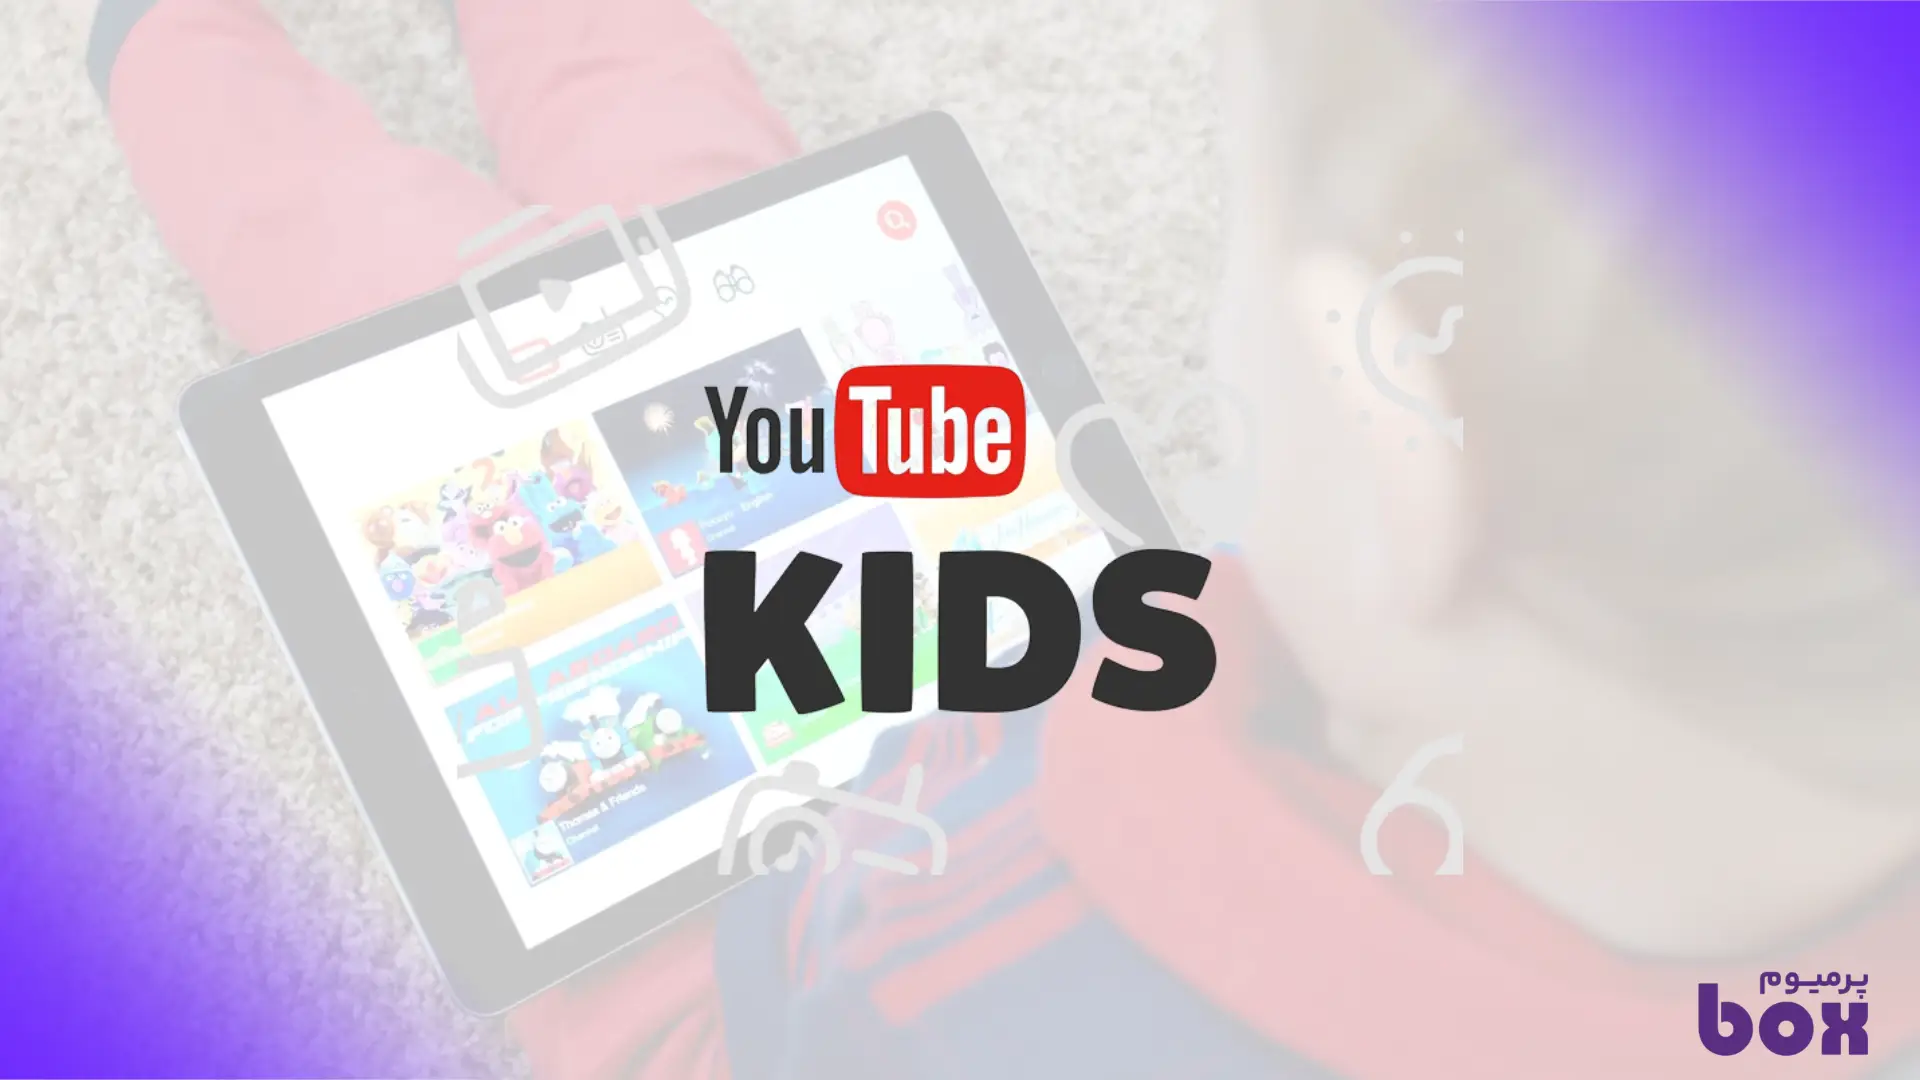 معرفی سرویس یوتیوب کیدز بخشی از سرویس پرمیوم یوتیوب که برای کودکان ایجاد شده است